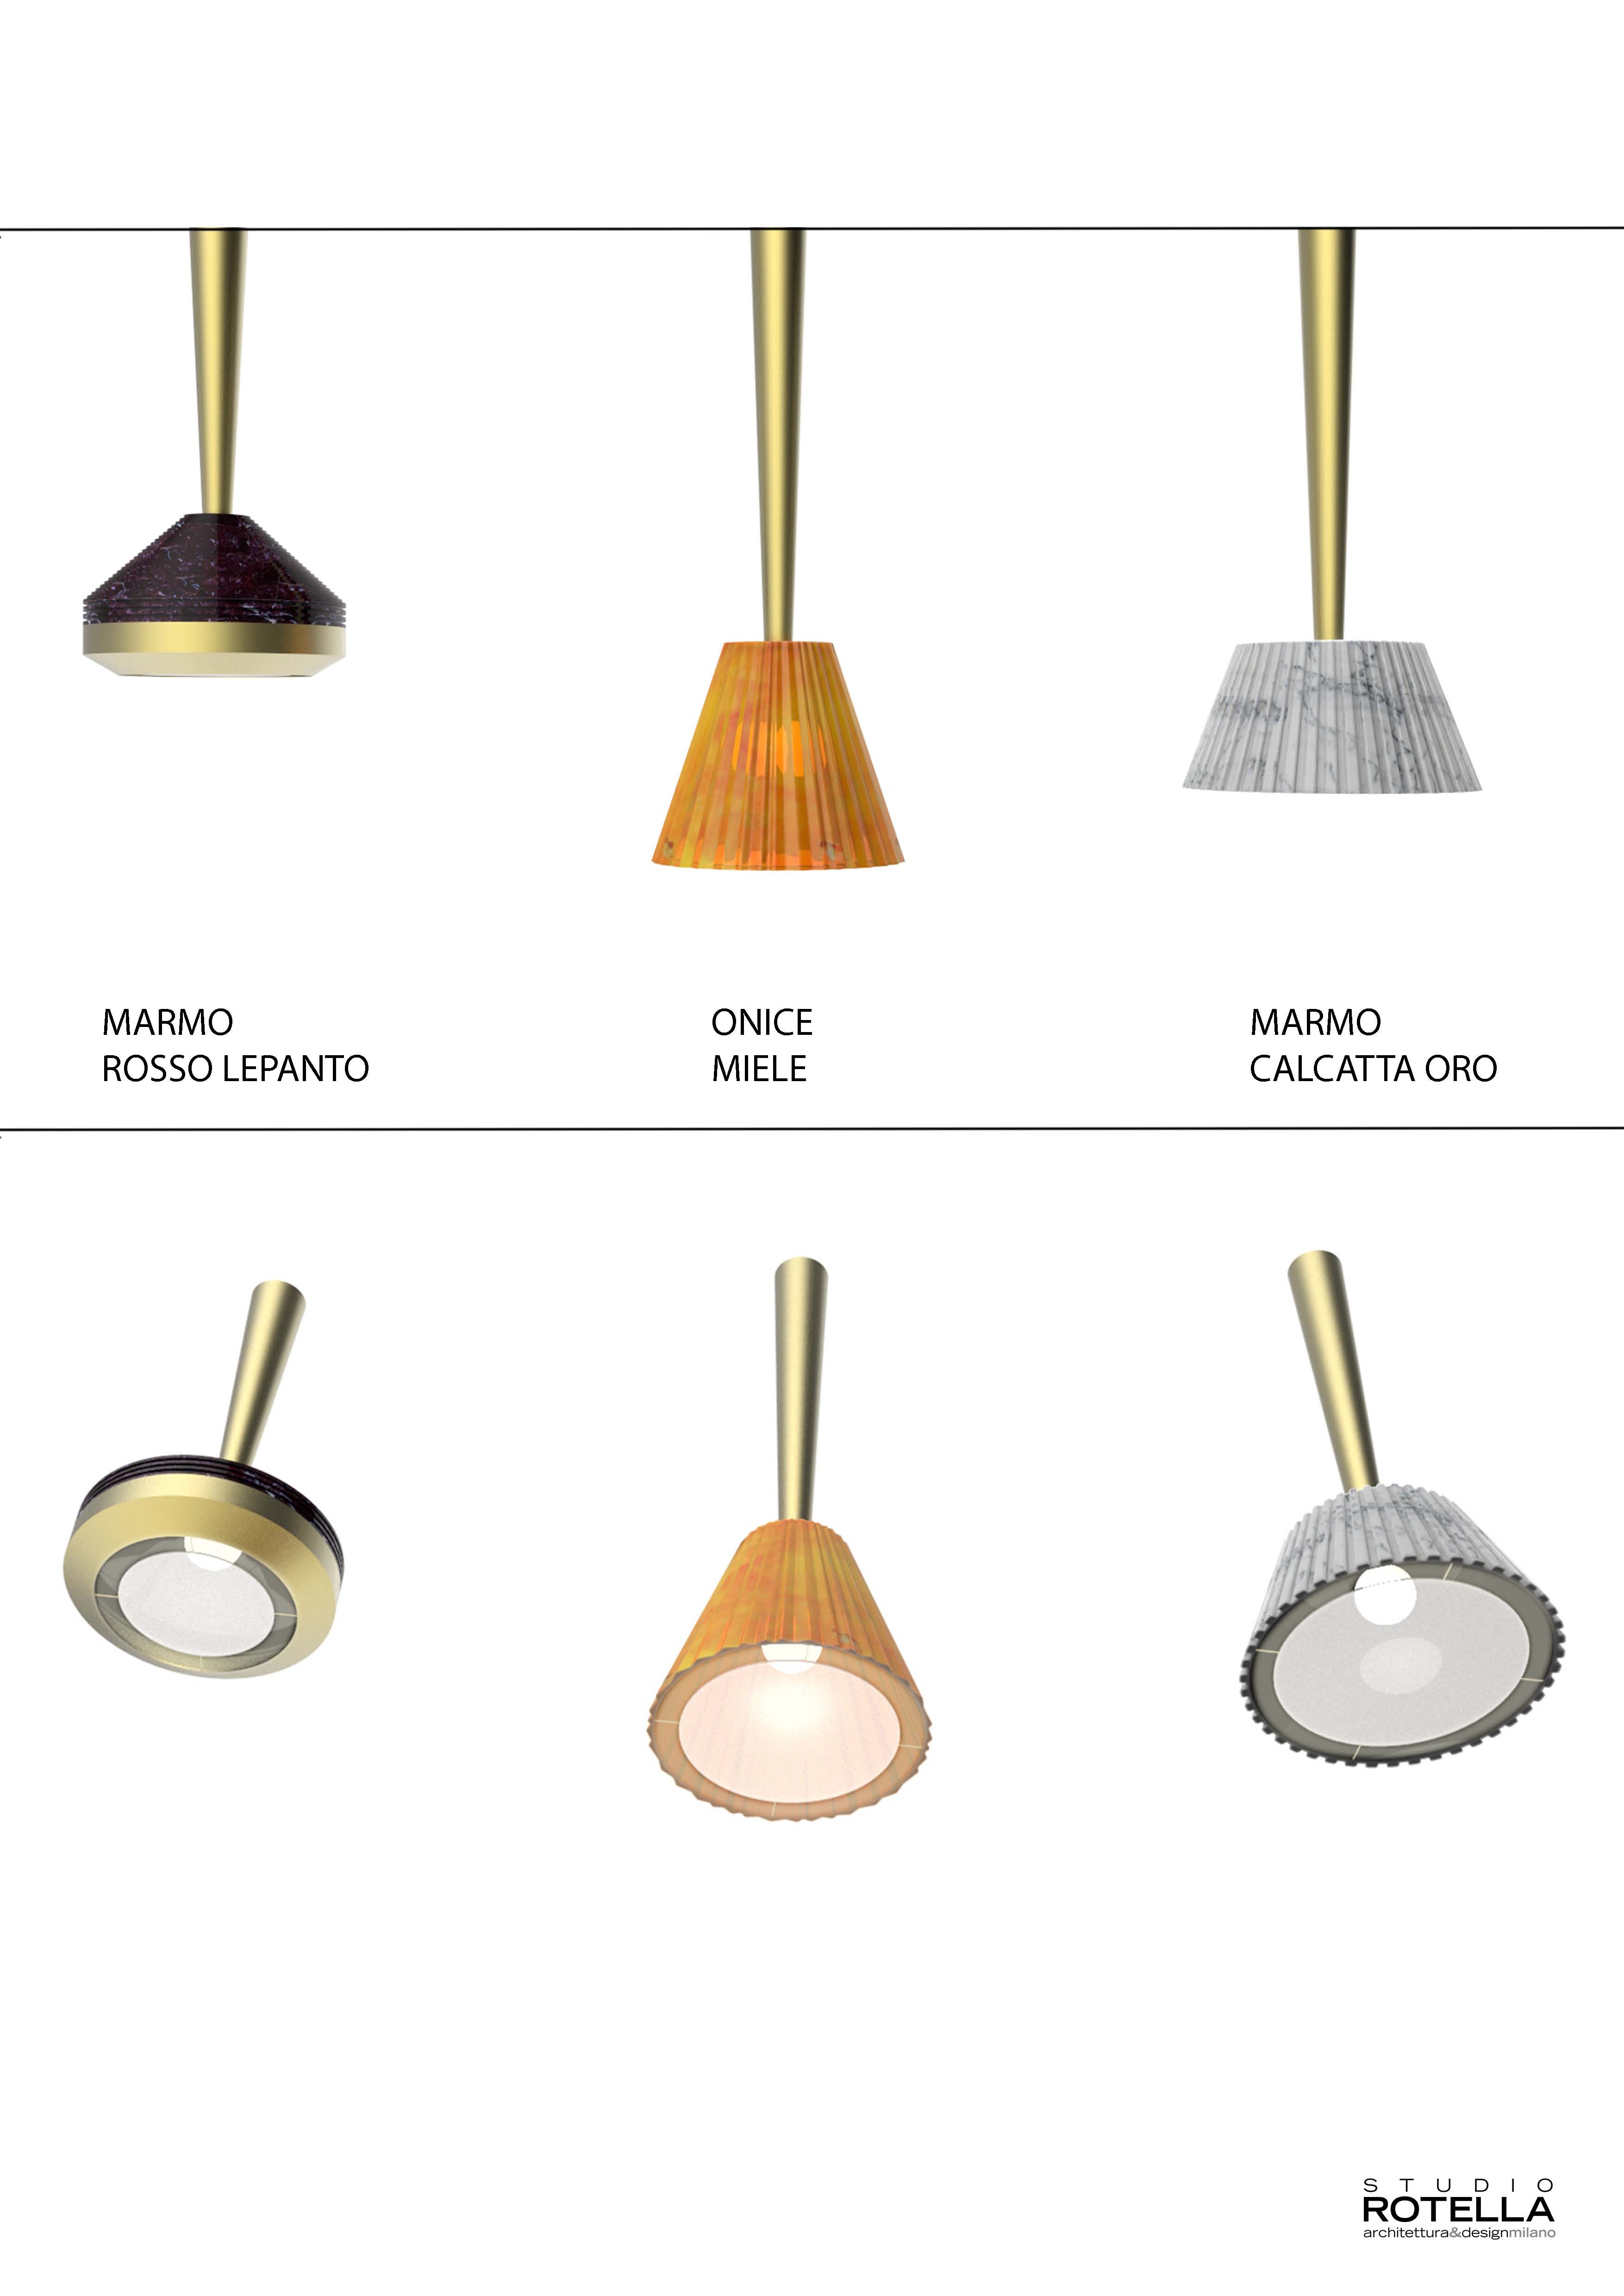 Fuda marmi presenta le lampade Oreadi, disegnate dall&#8217;architetto Fabio Rotella